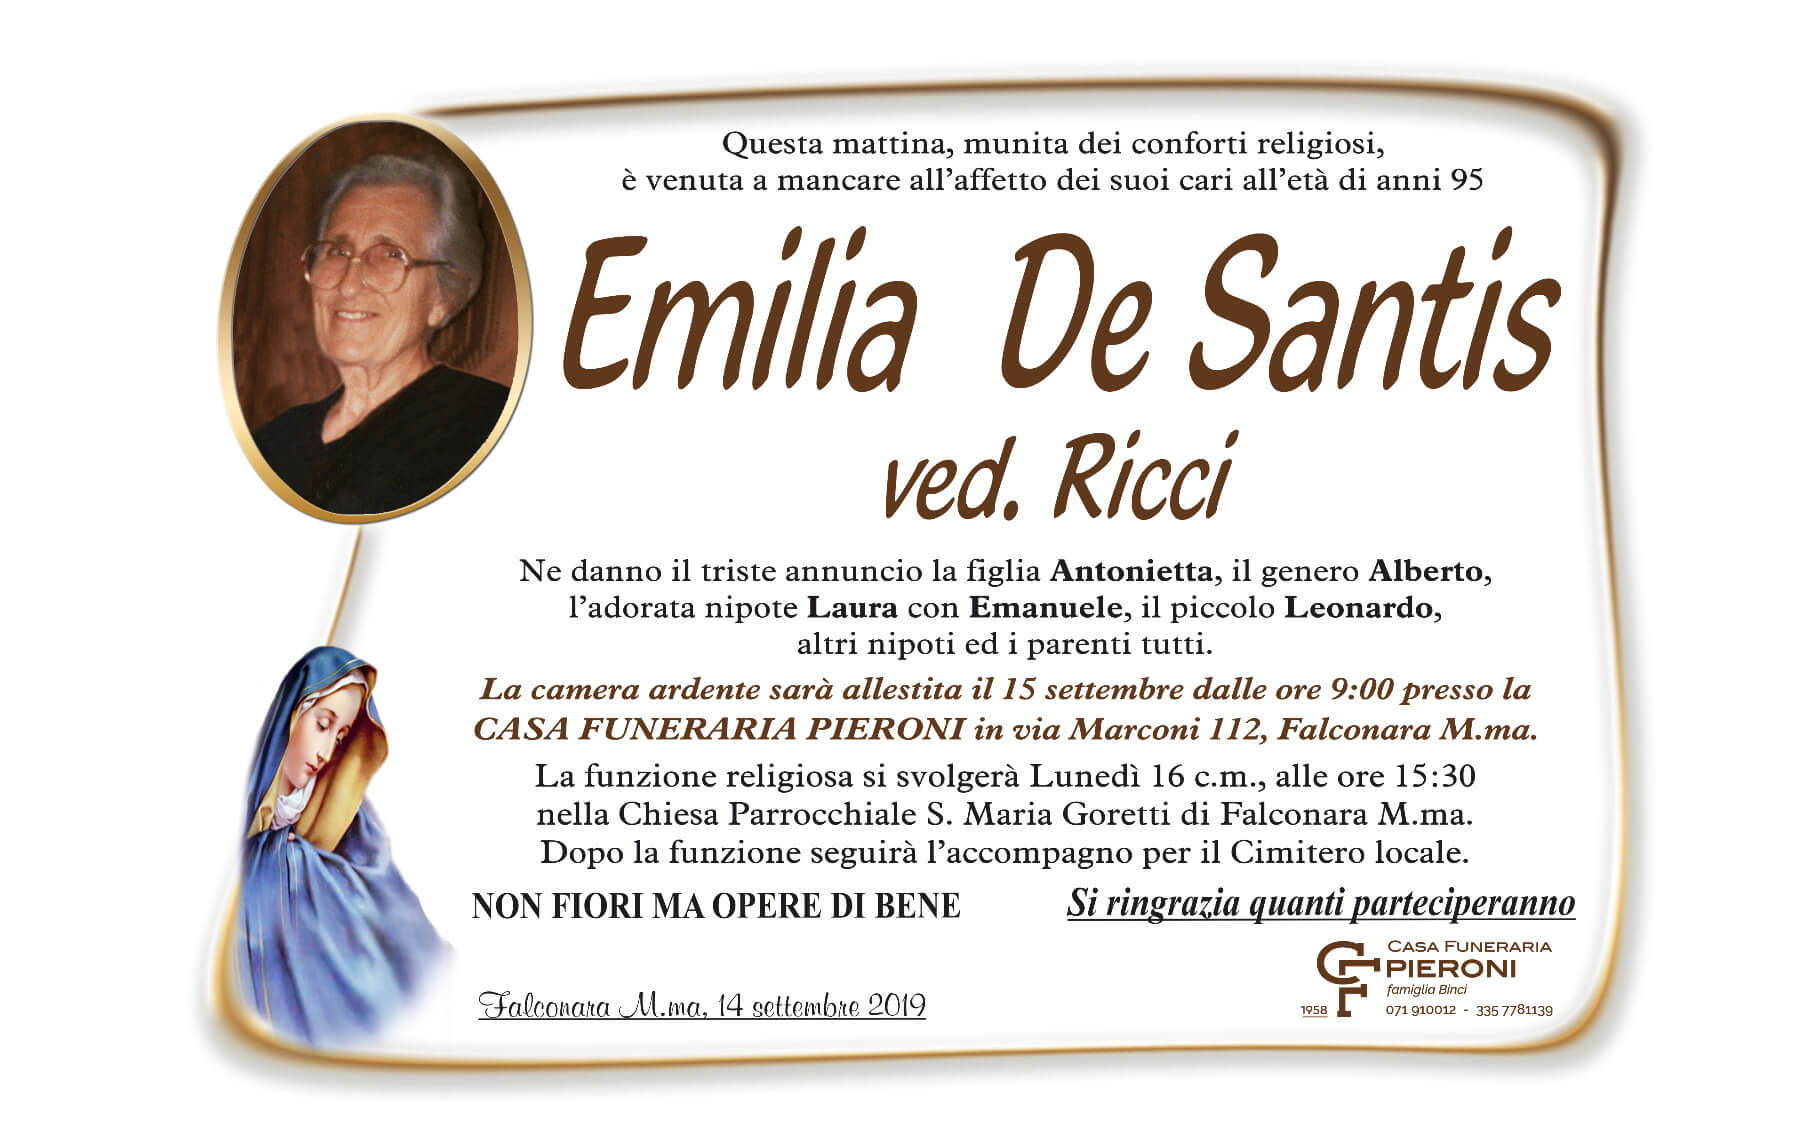 Emilia De Santis